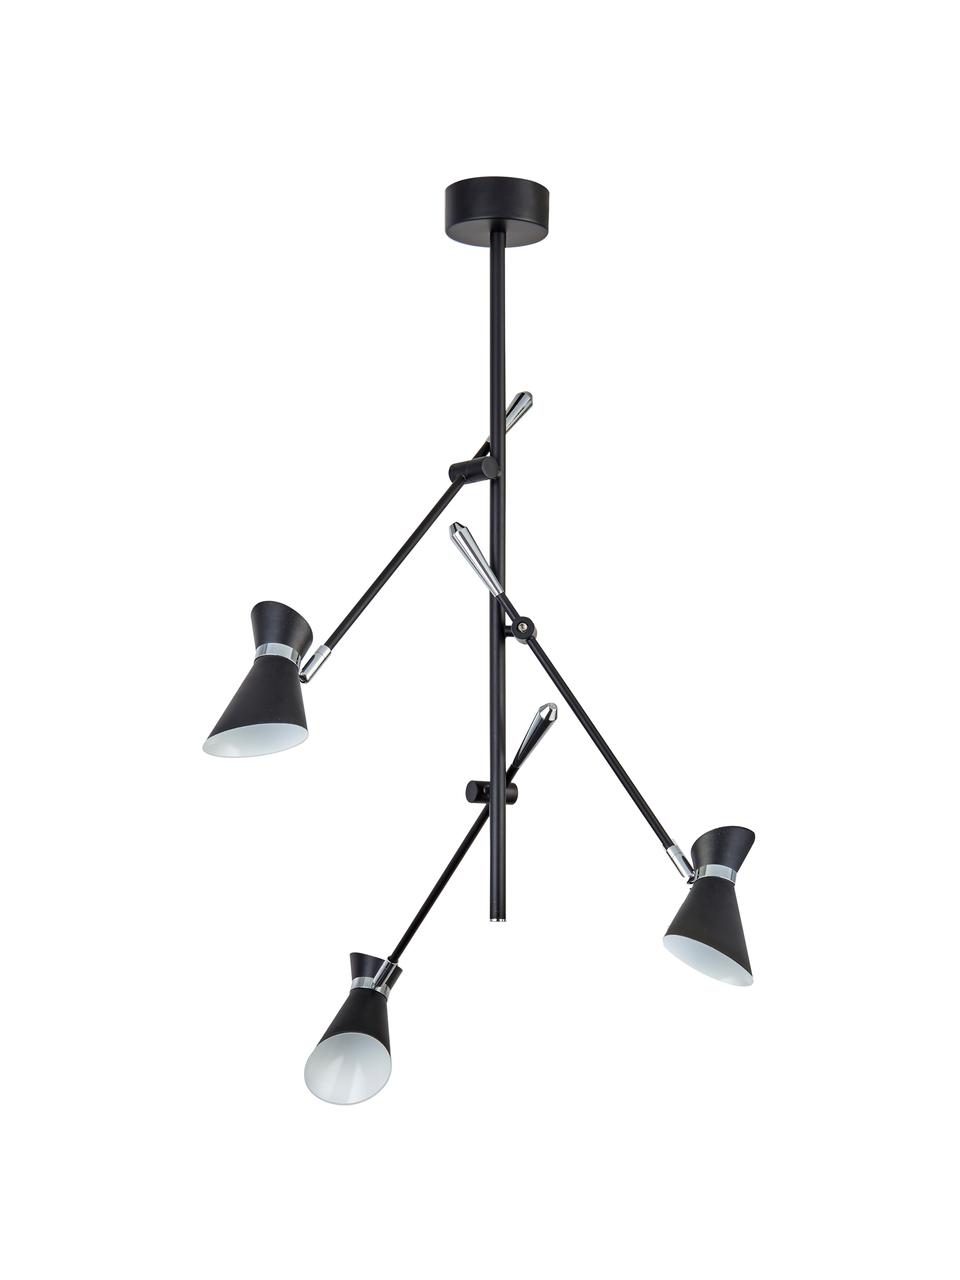 LED hanglamp Diablo in zwart-zilver, Lampenkap: staalkleurig, Decoratie: staal, Zwart, chroomkleurig, 65 x 69 cm